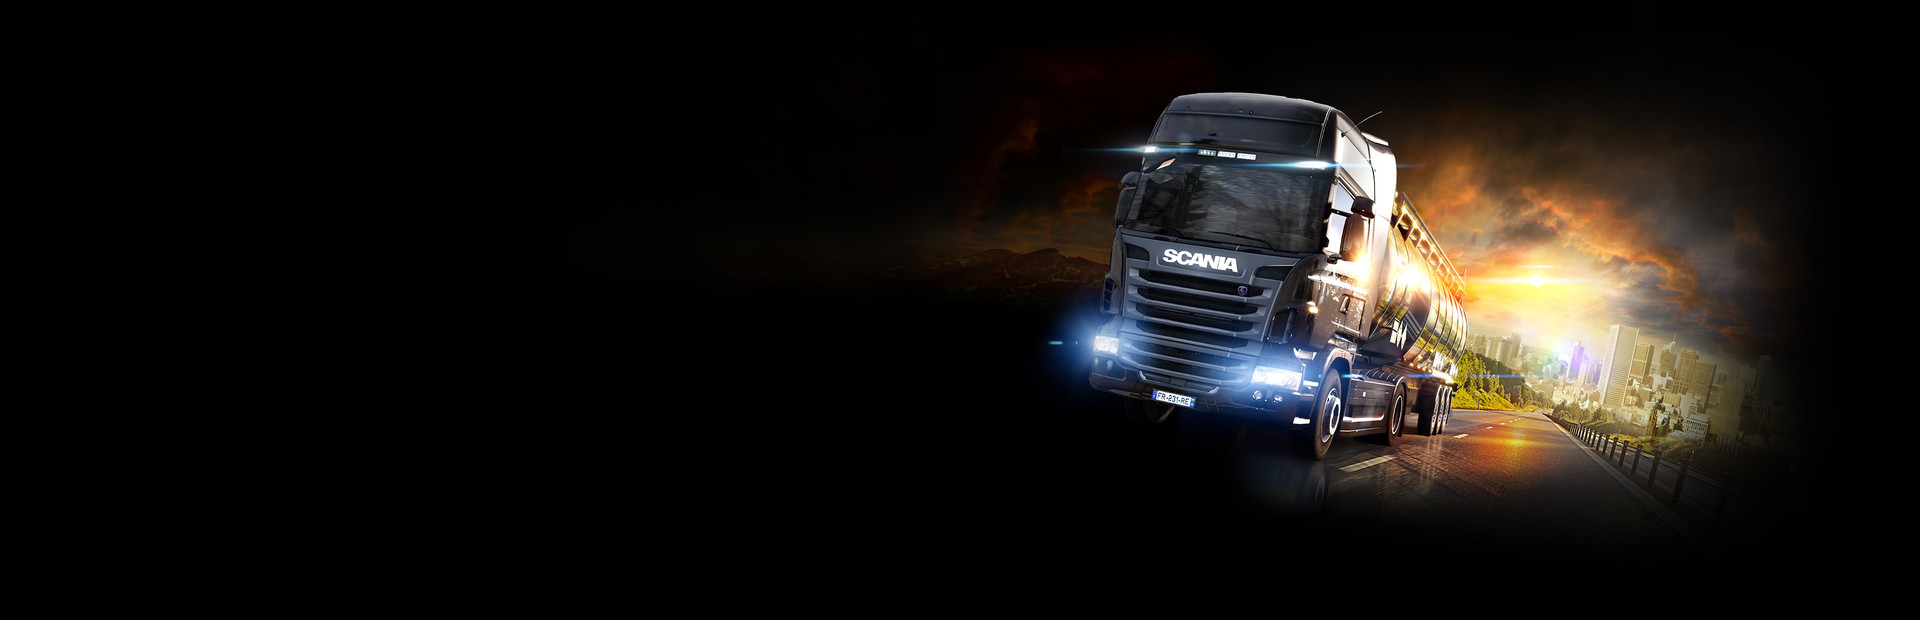 Euro Truck Simulator 2 Demo cover image